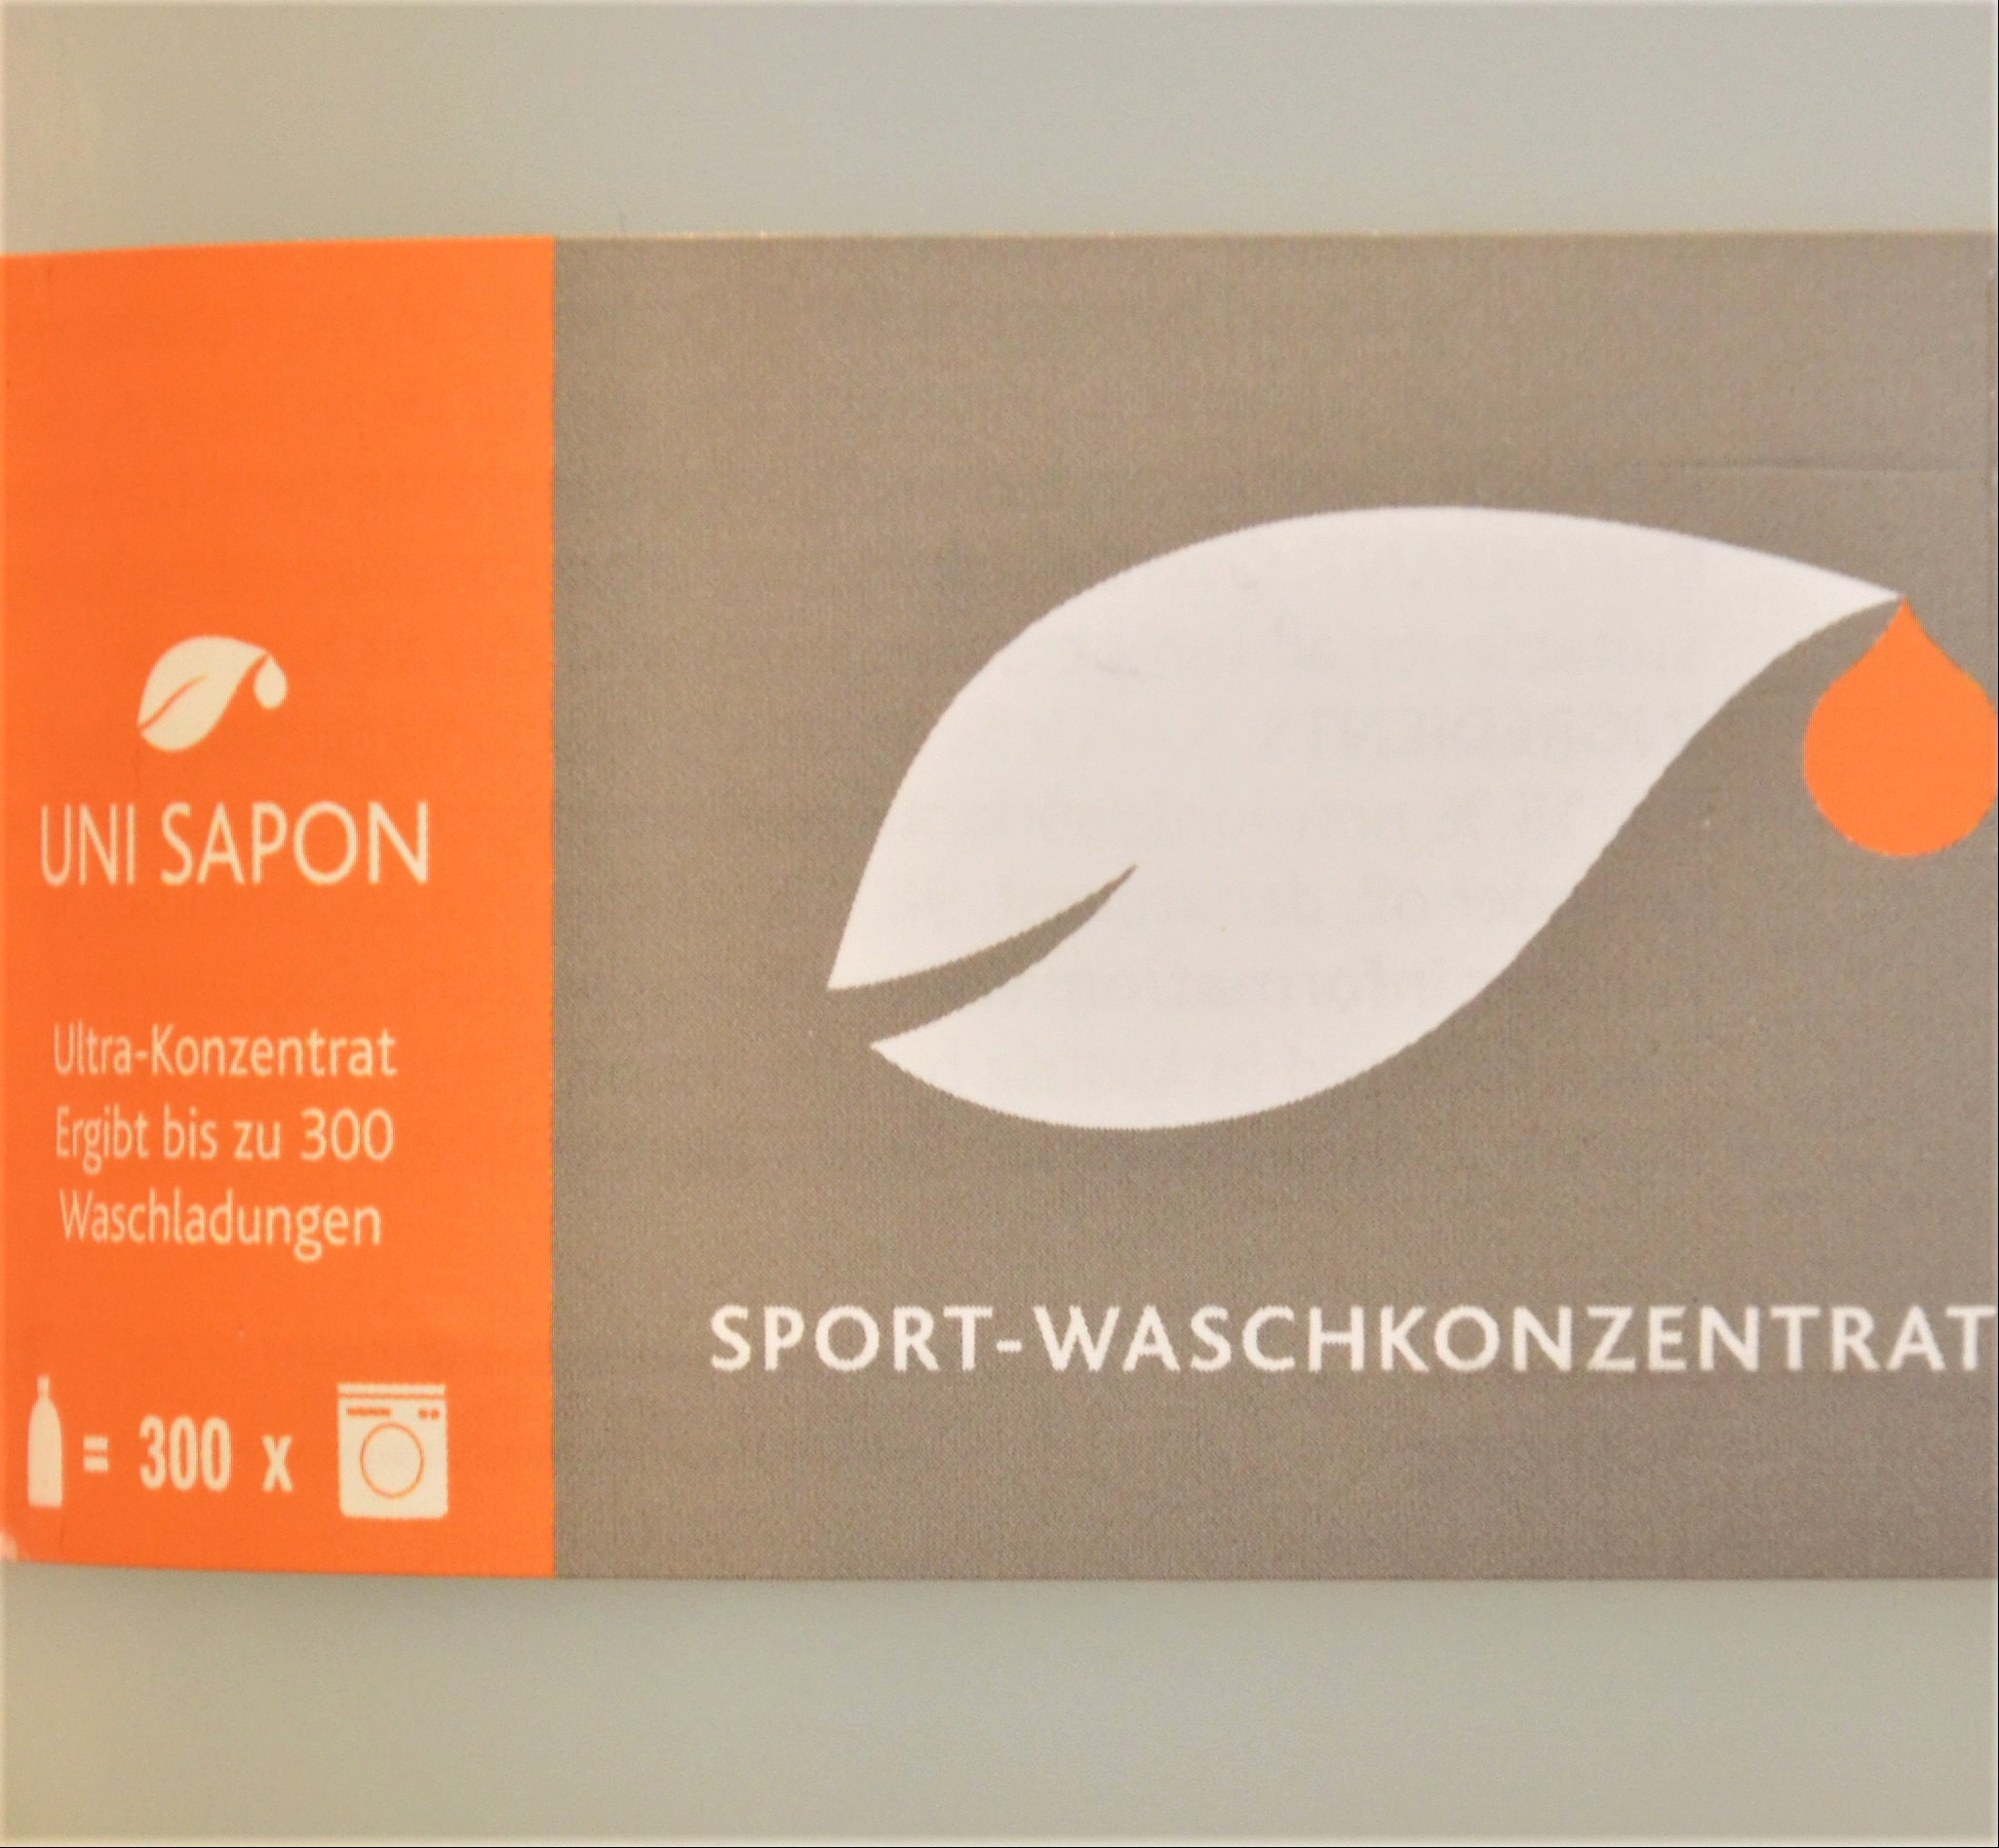 UniSapon Sport Waschkonzentrat nachfüllen